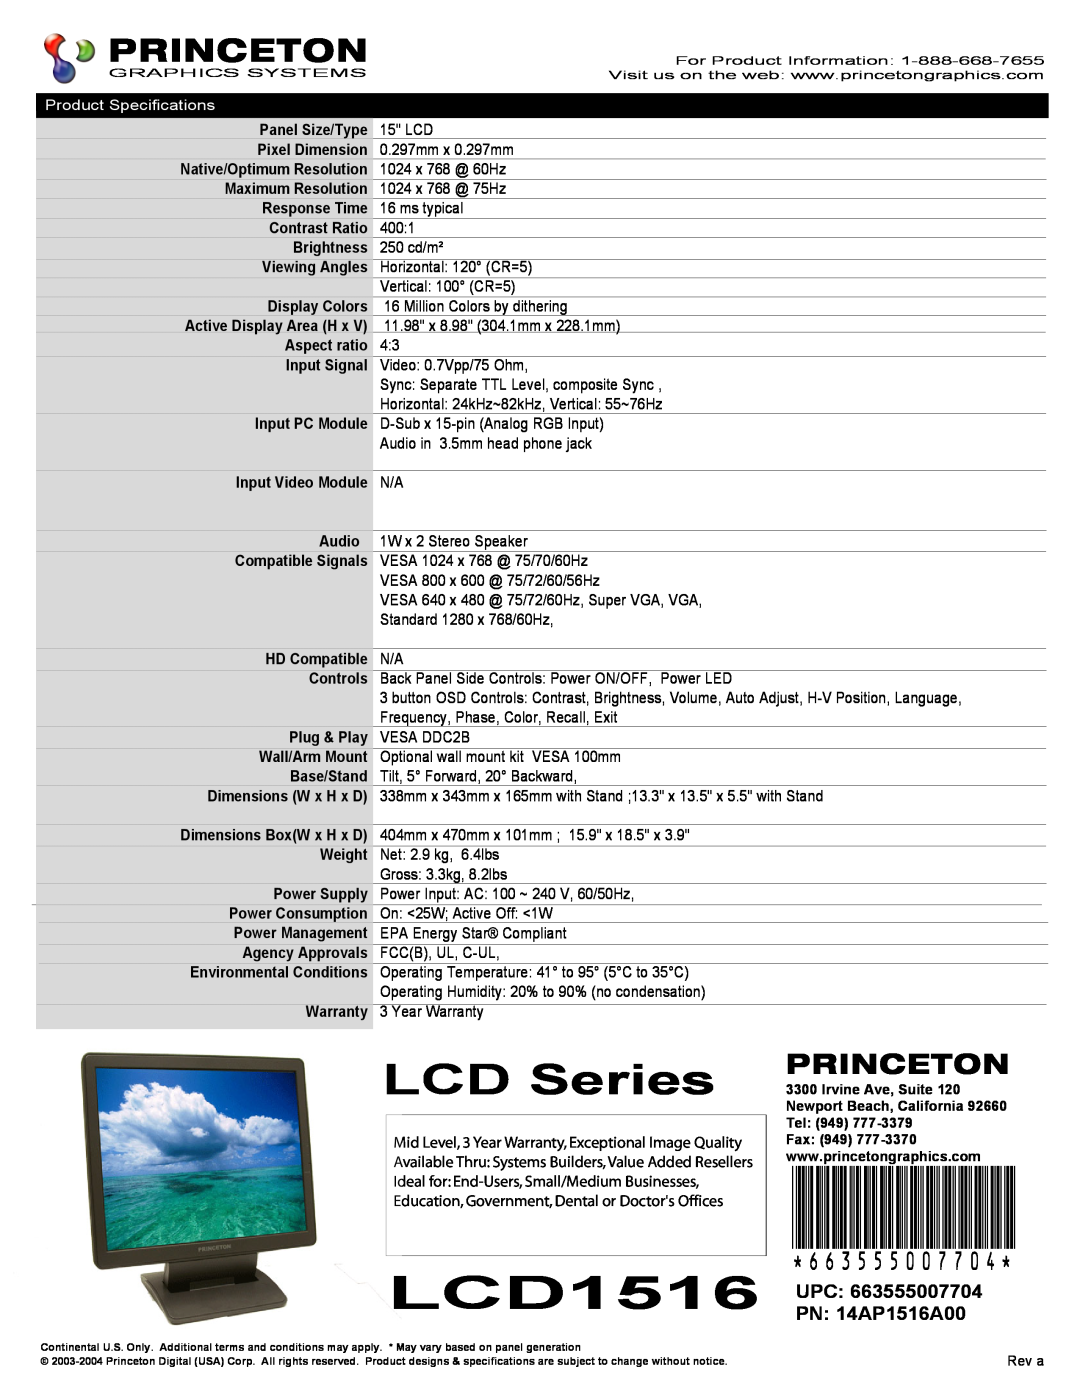 Princeton LCD1516 warranty LCD Series, 663555007704, UPC PN 14AP1516A00 